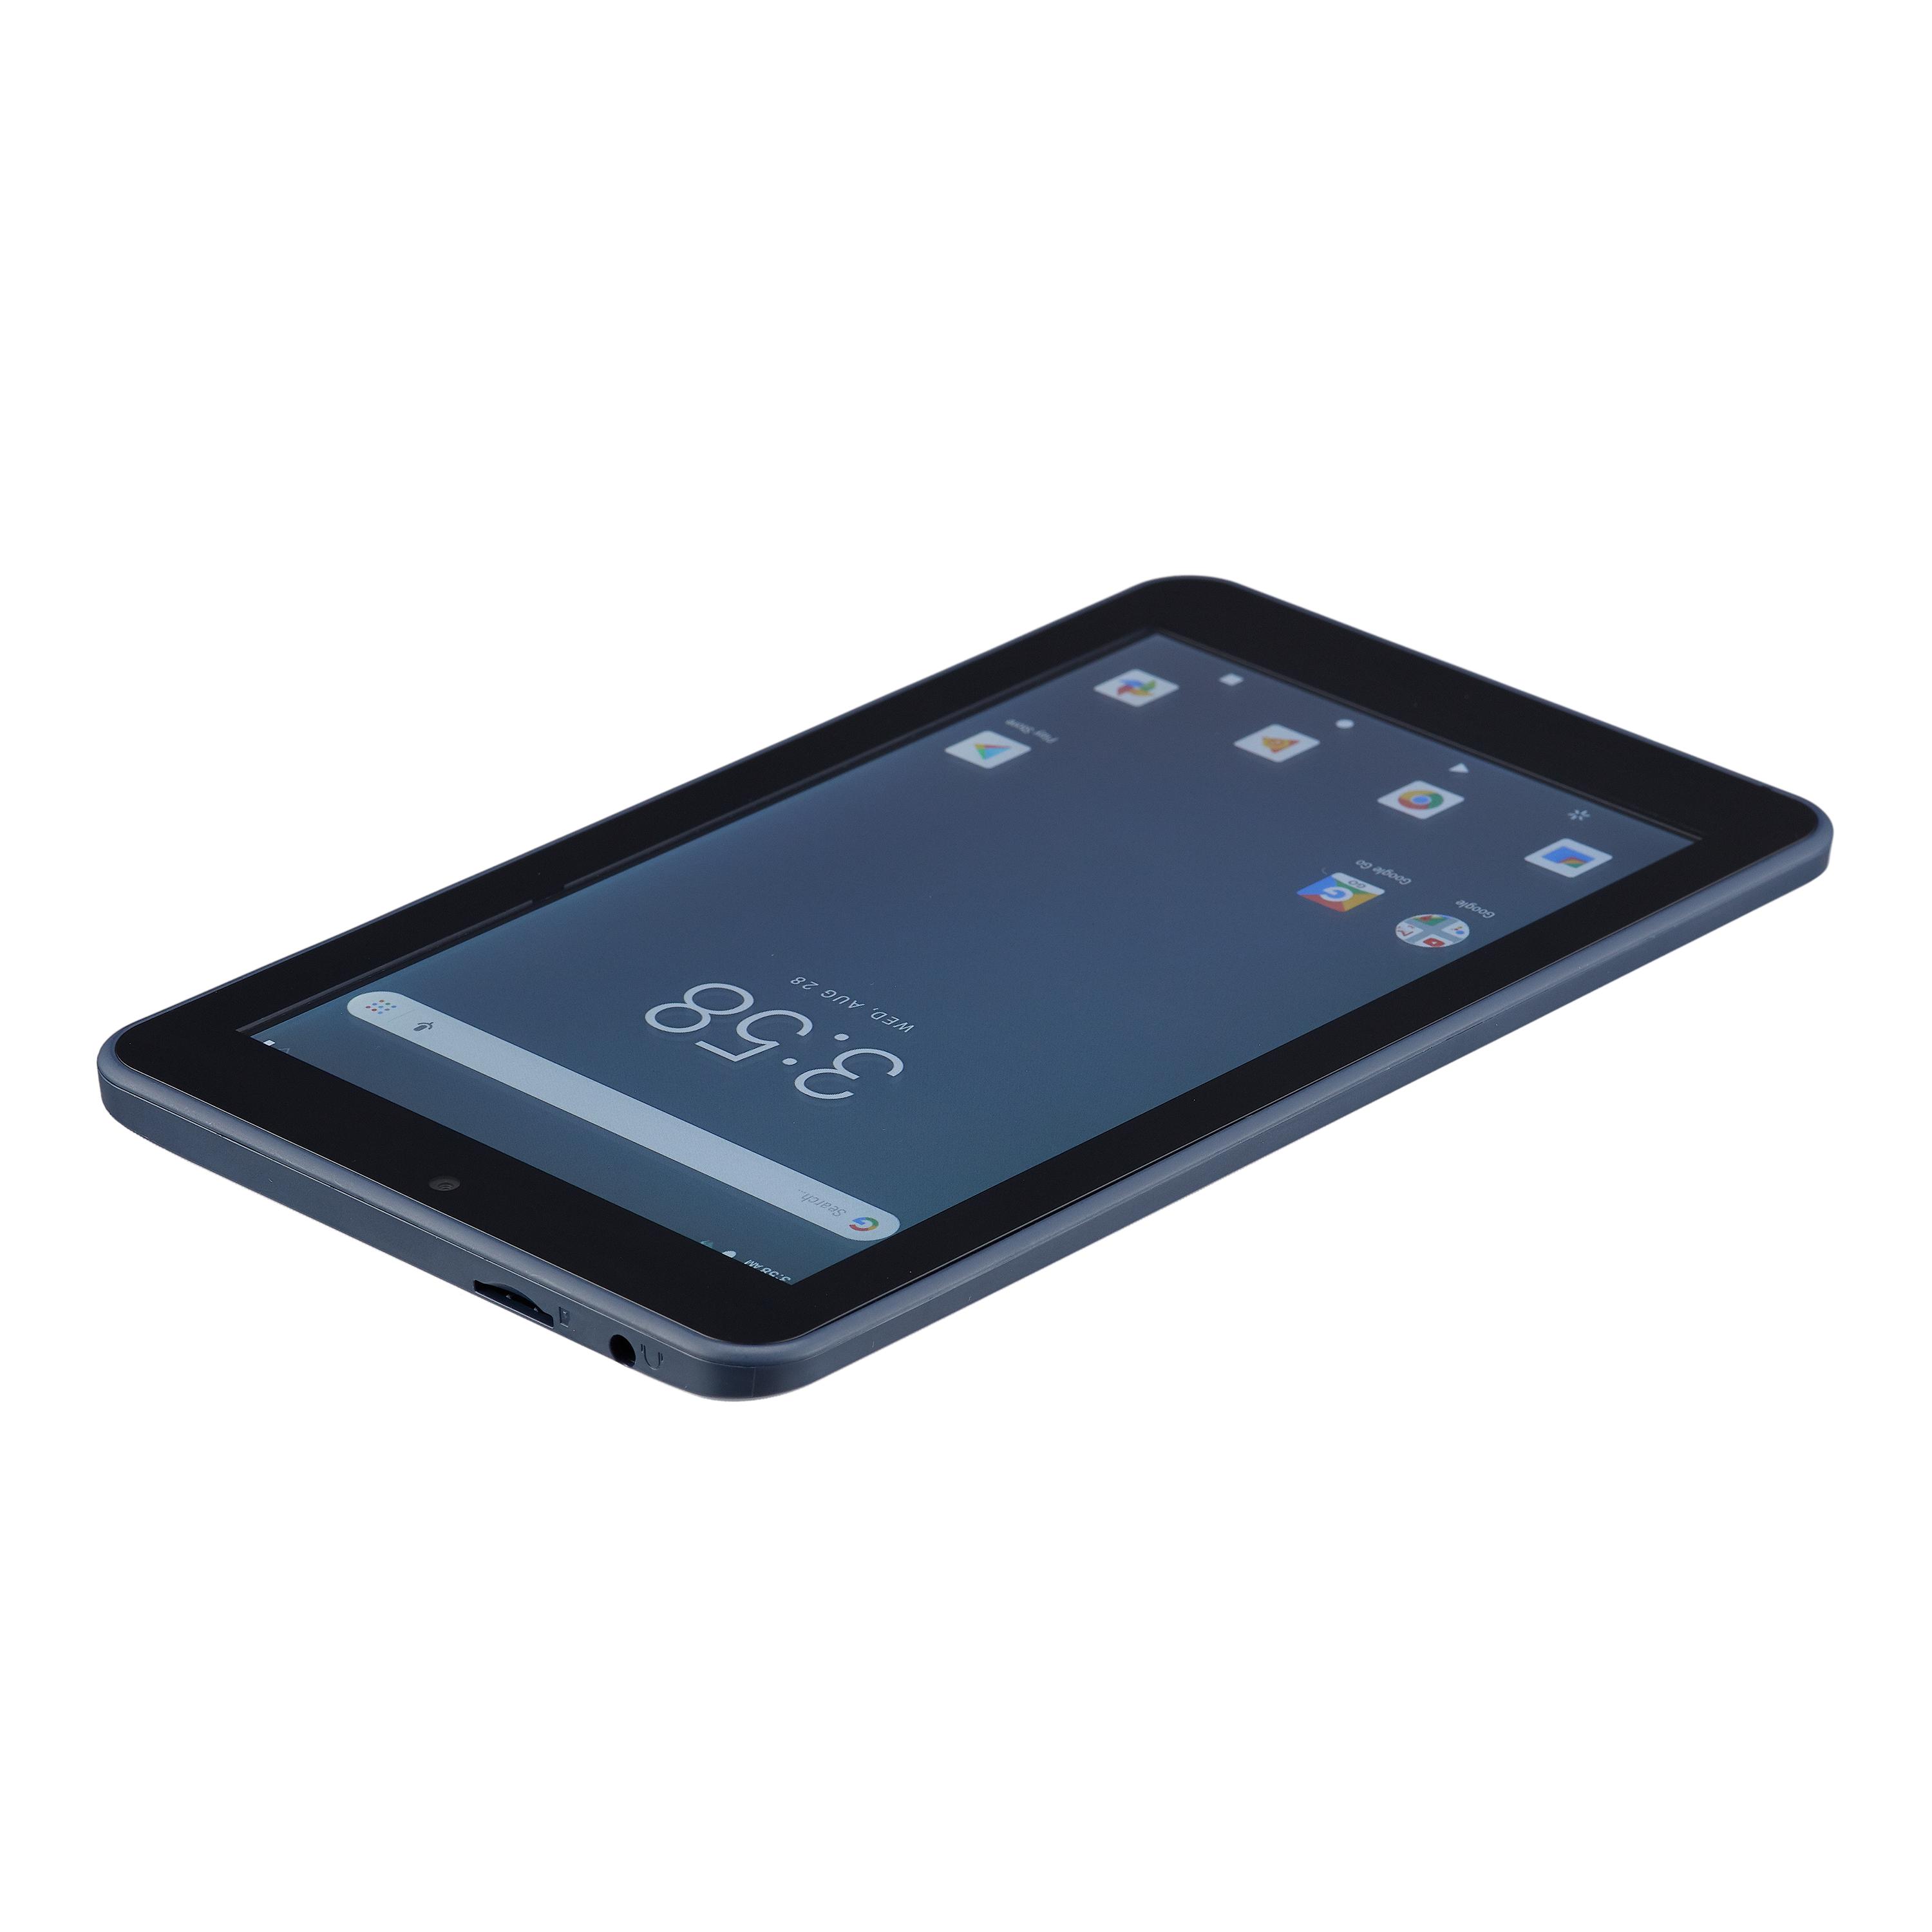 onn. 7" Tablet 16GB Android- Bonus $10 off Walmart eBooks Included - image 2 of 4